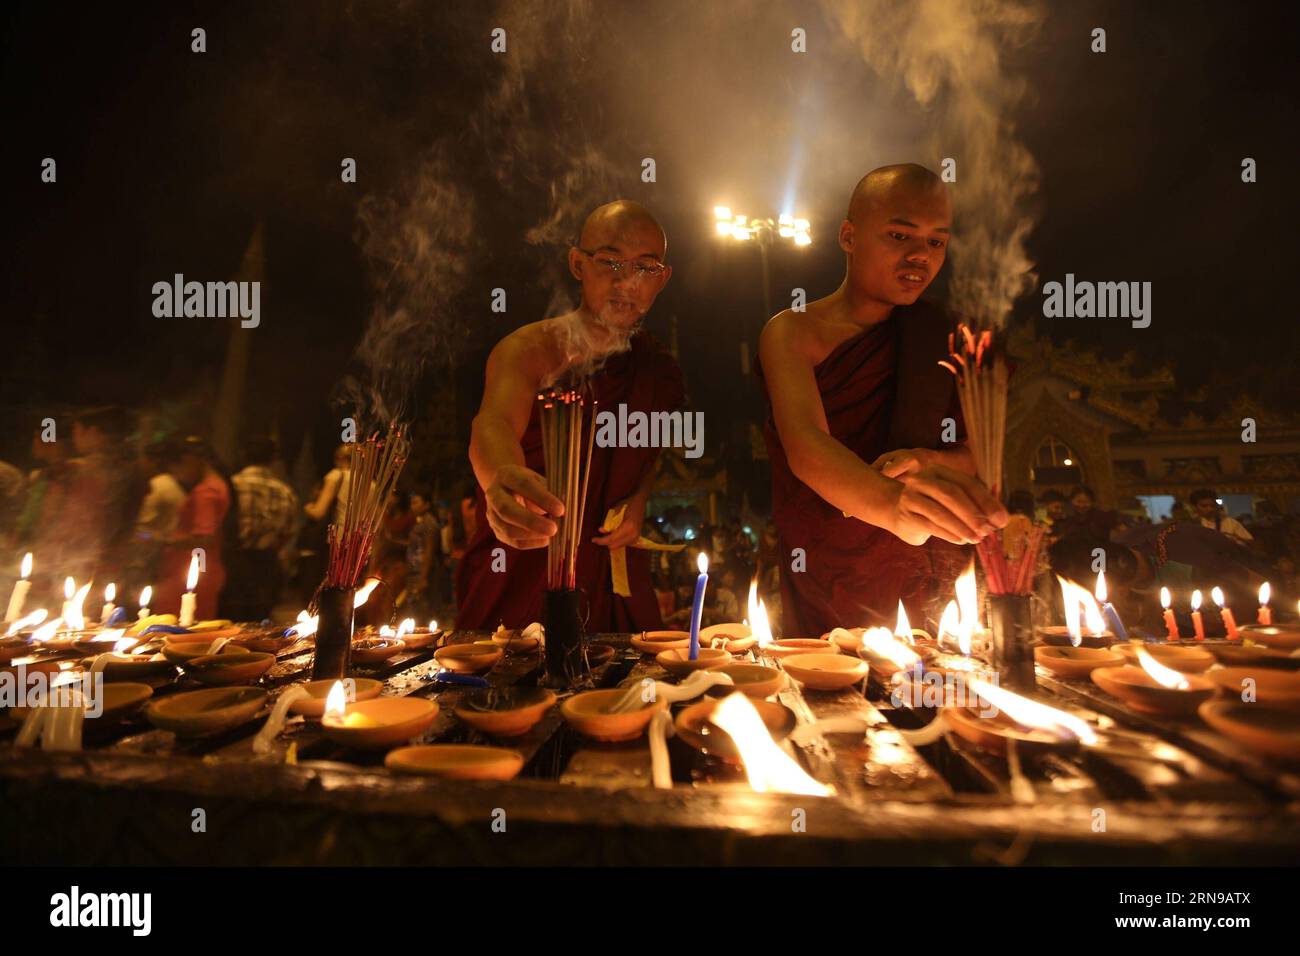 Myanmar buddhistische Mönche verbrennen Räucherstäbchen für das Gebet auf Myanmars traditionellem Tazaungdaing-Festival in der Shwedagon-Pagode in Yangon, Myanmar, 26. November 2015. Das Tazaungdaing Festival, auch bekannt als das Festival der Lichter, das im achten Monat des traditionellen myanmarischen Kalenders auf den Vollmondtag fällt, wird als Nationalfeiertag in Myanmar gefeiert und markiert das Ende der Regenzeit. ) MYANMAR-YANGON-TAZAUNGDAING FESTIVAL UxAung PUBLICATIONxNOTxINxCHN die buddhistischen Mönche Myanmars verbrennen Räucherstäbchen, um AUF DEM traditionellen myanmarischen Tazaungdaing-Festival IN der Shwedagon-Pagode ZU beten Stockfoto